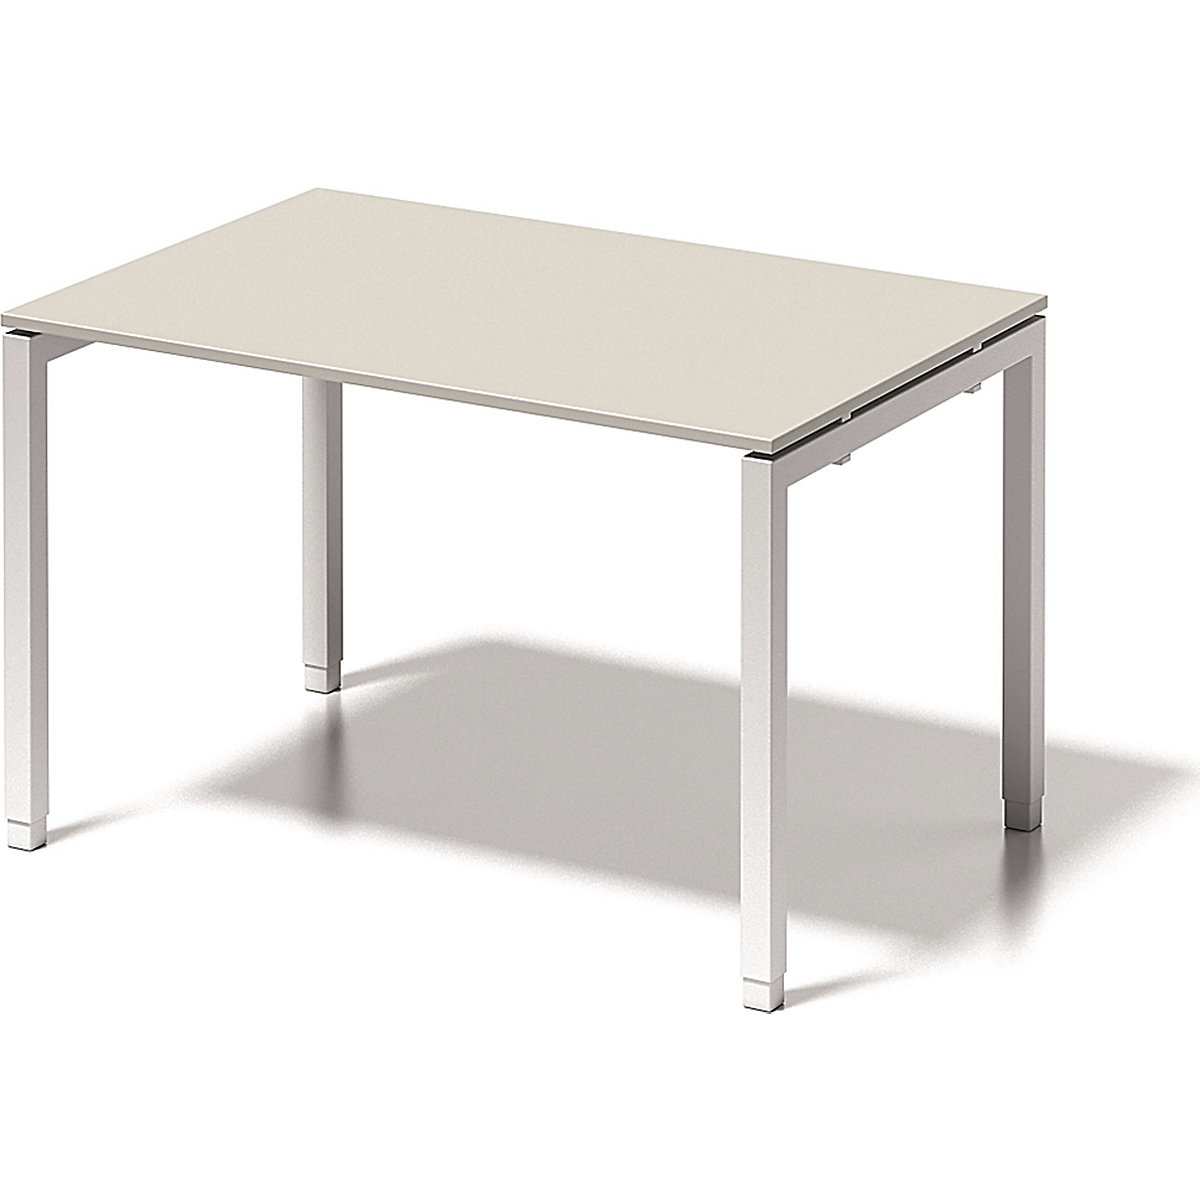 Písací stôl CITO, podstavec v tvare U – BISLEY, v x š x h 650– 850 x 1200 x 800 mm, podstavec biela, doska stola šedobiela-3